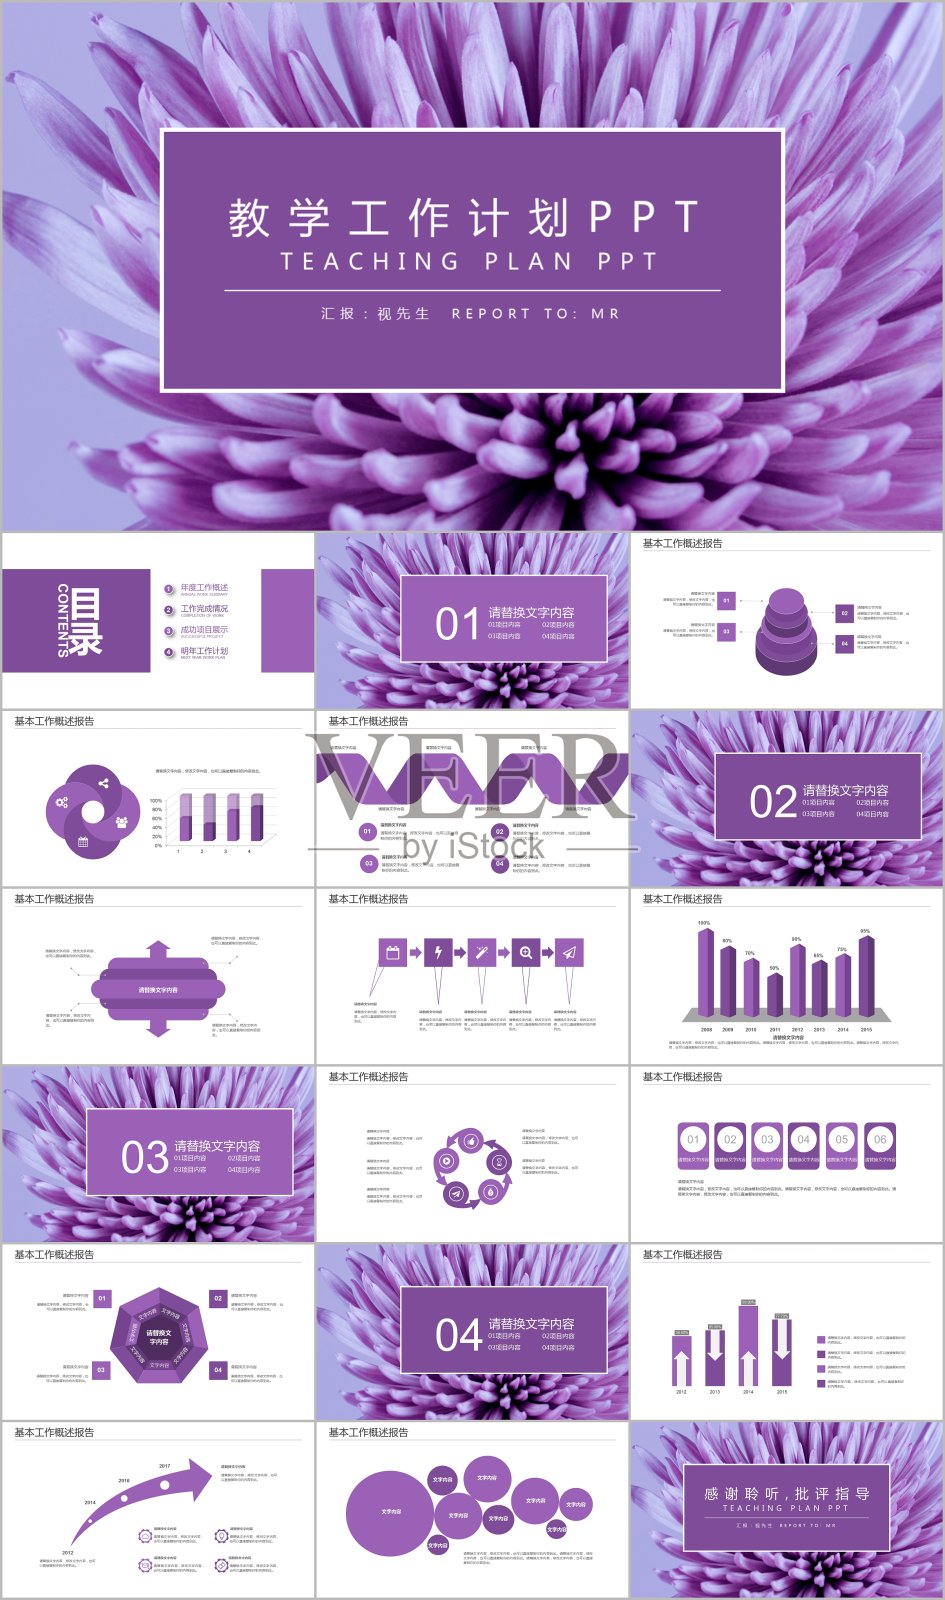 紫色花朵教学工作计划PPT模板素材